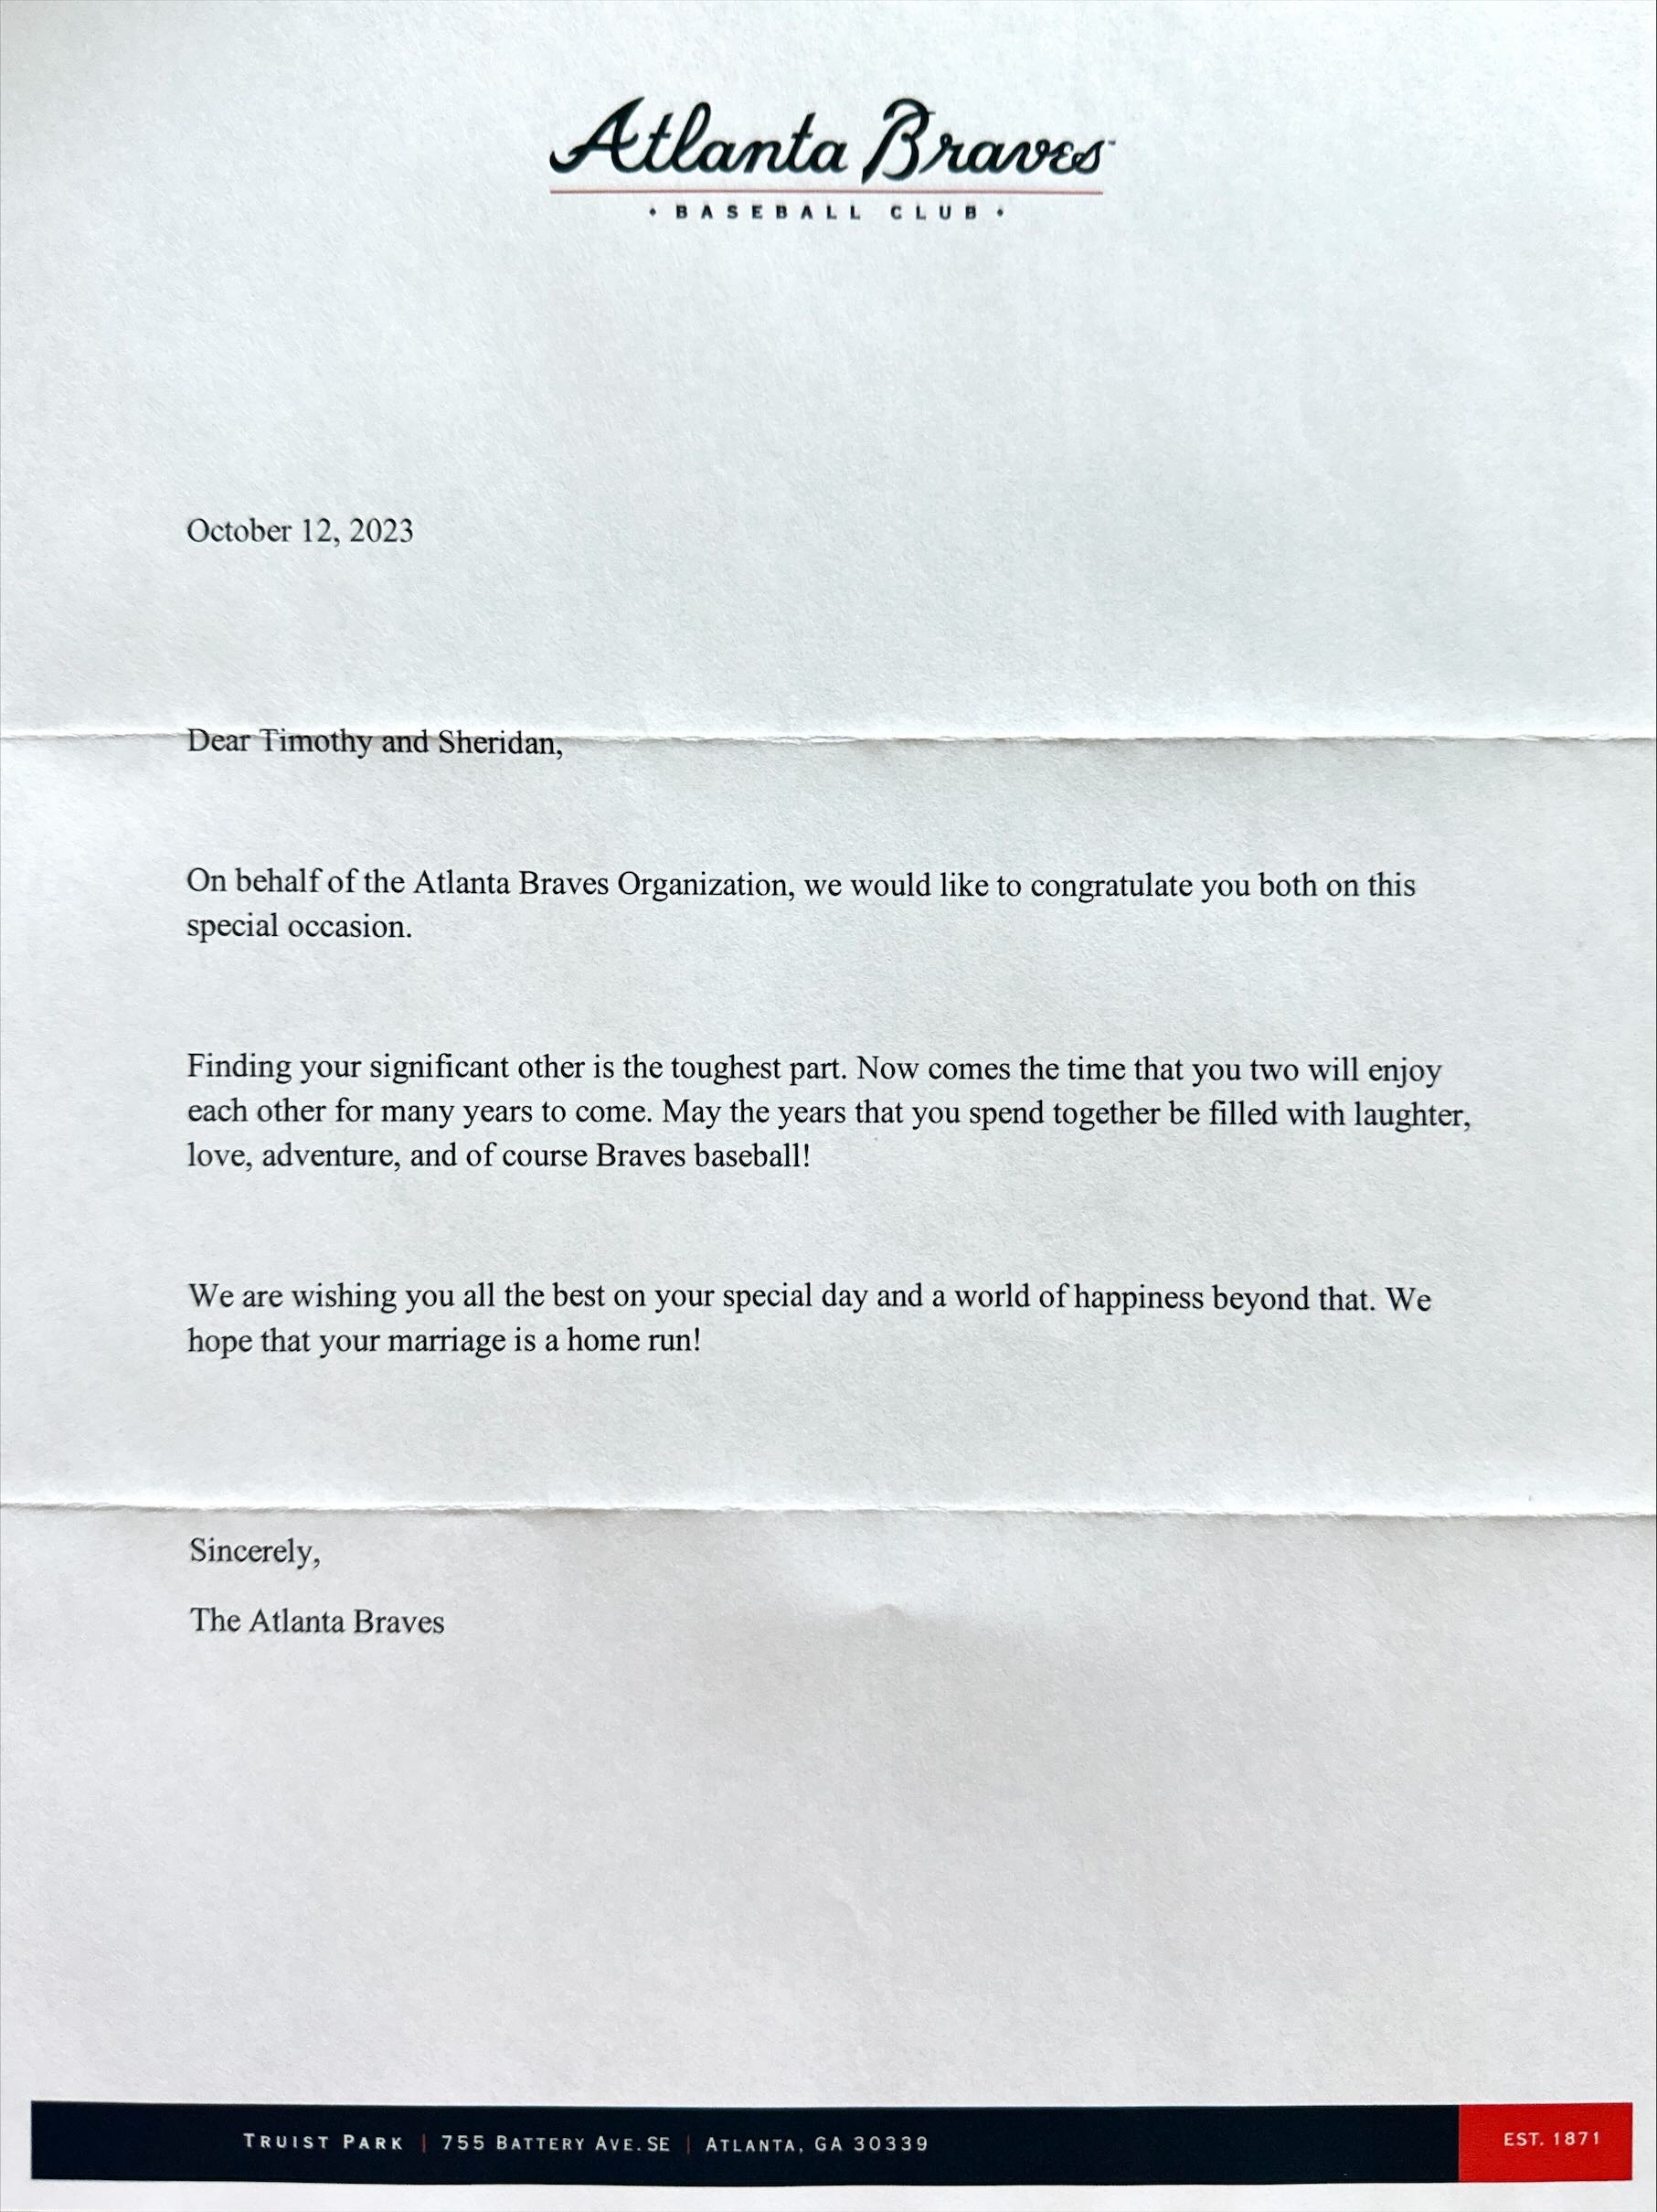 Atlanta Braves Letter